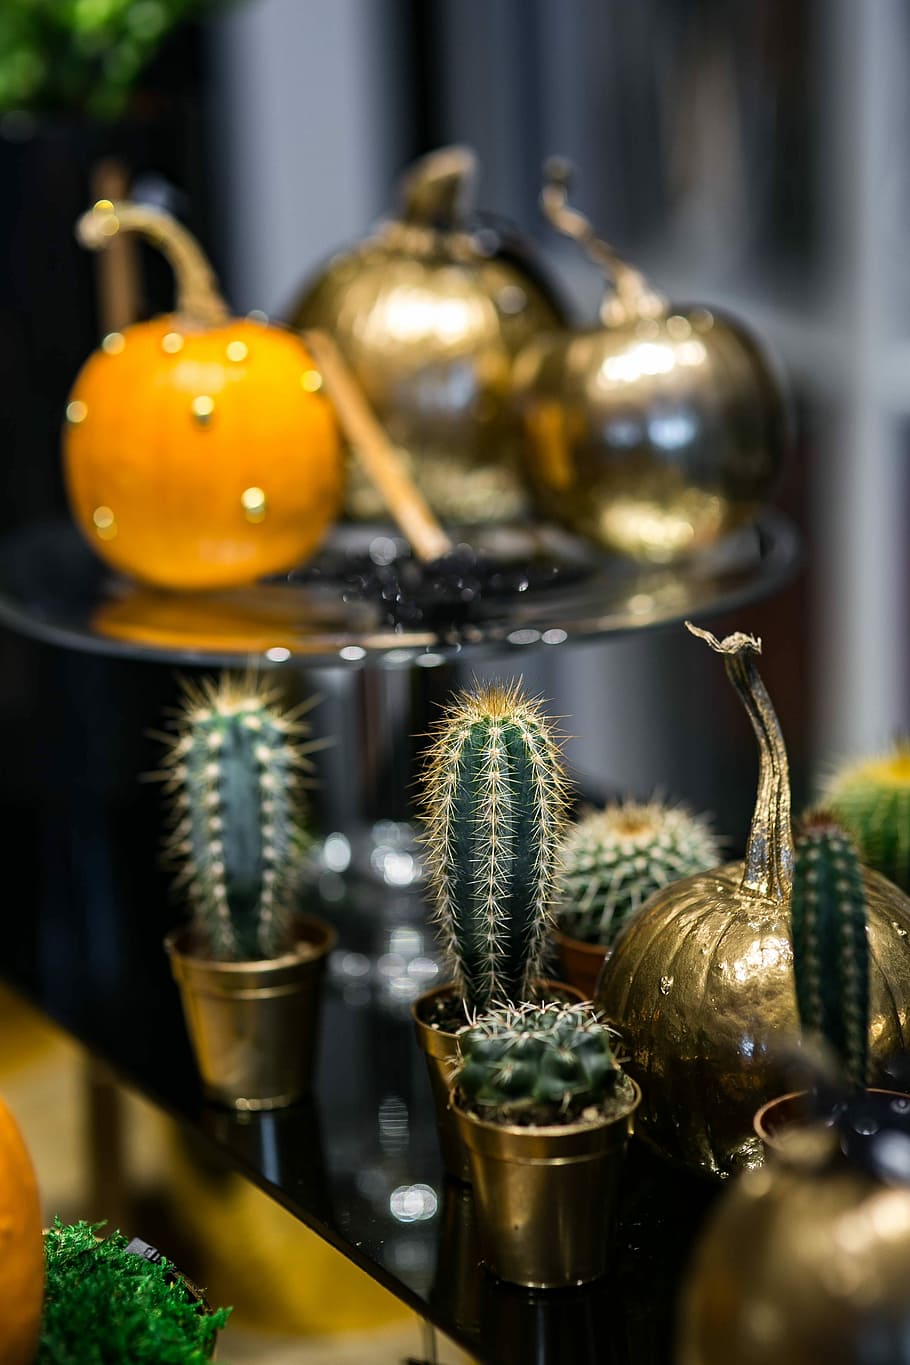 ornamentales, calabazas, cactus, oro, adornos, decoración, culturas, alimentos, color dorado, día